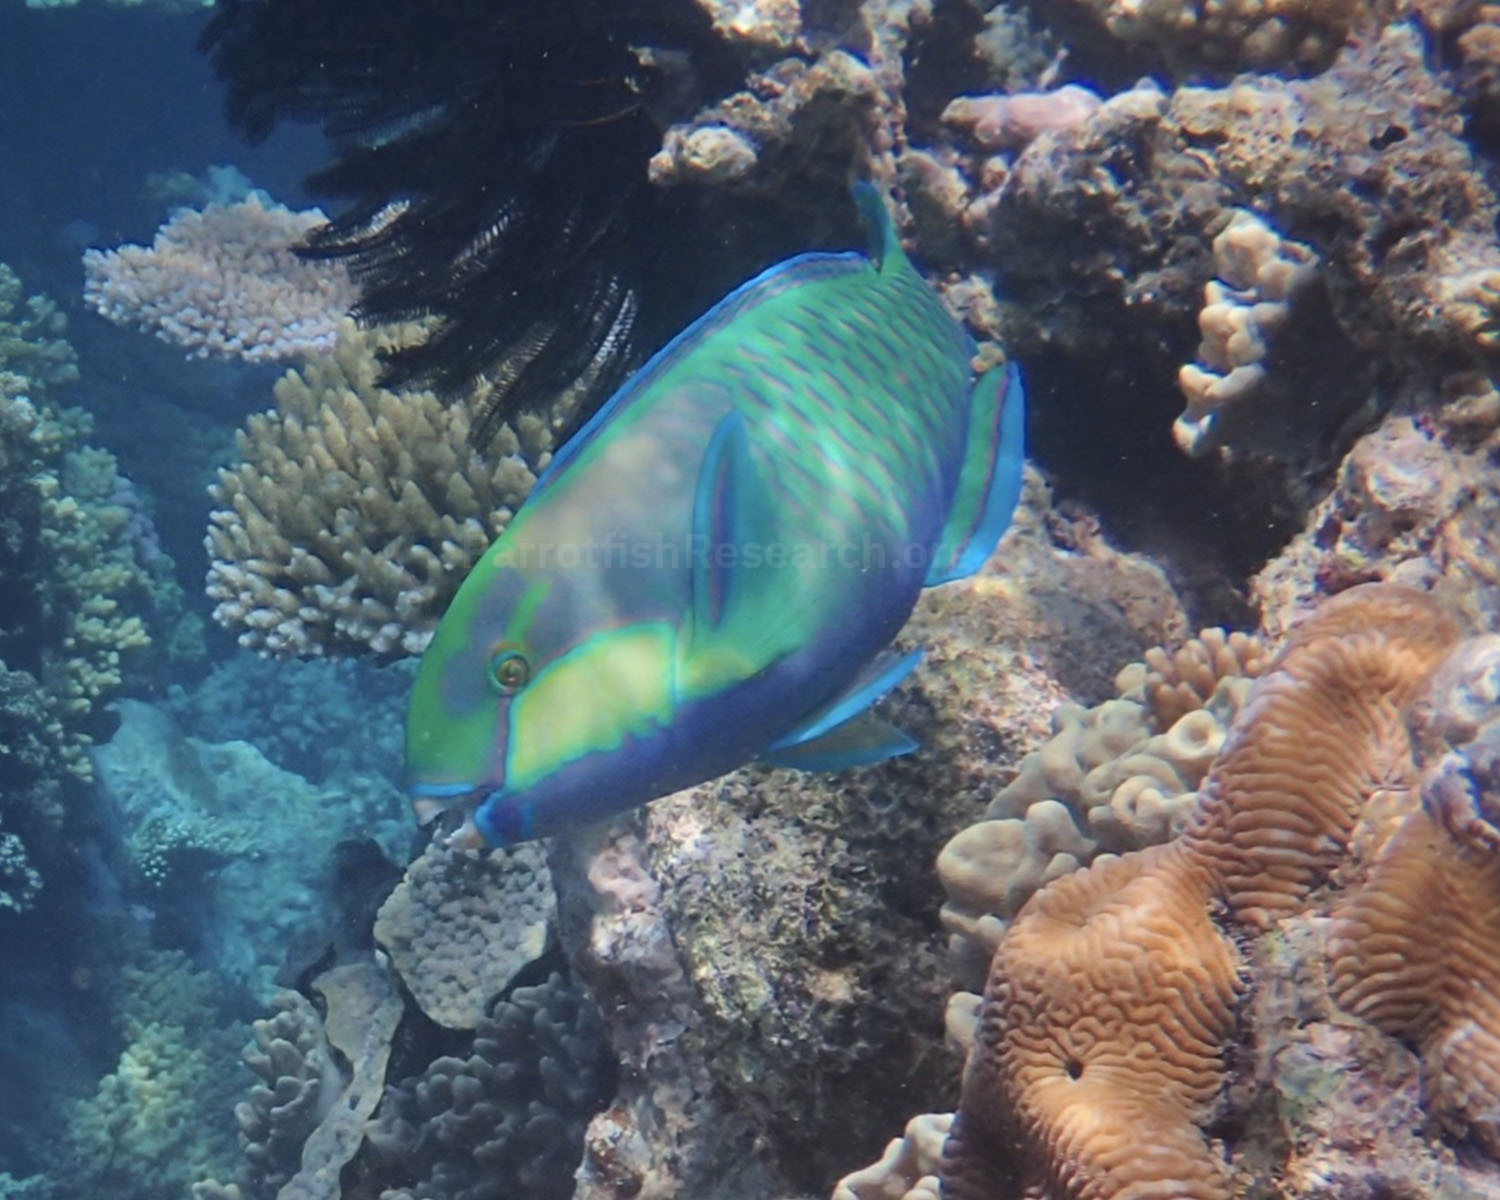 The parrotfish Chlorurus bleekeri